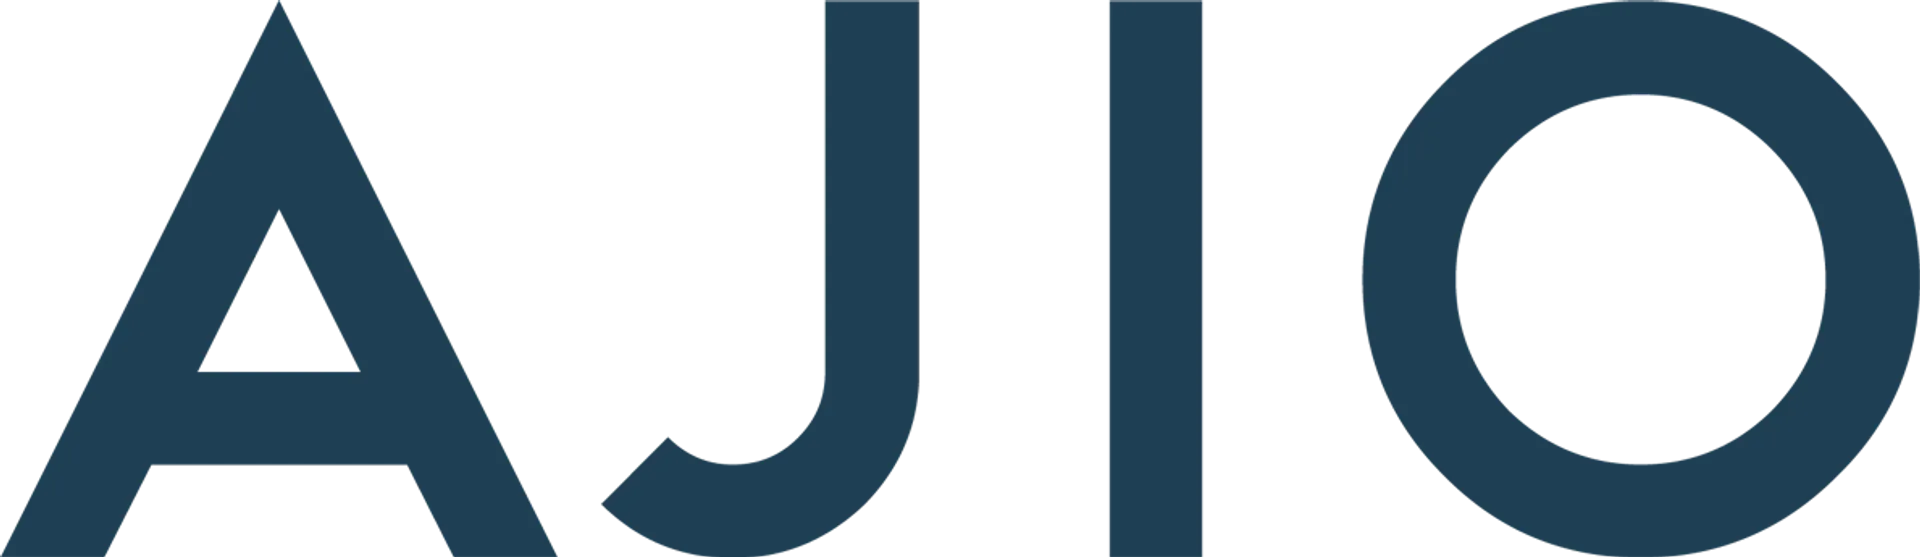 AJIO logo. Current weekly ad